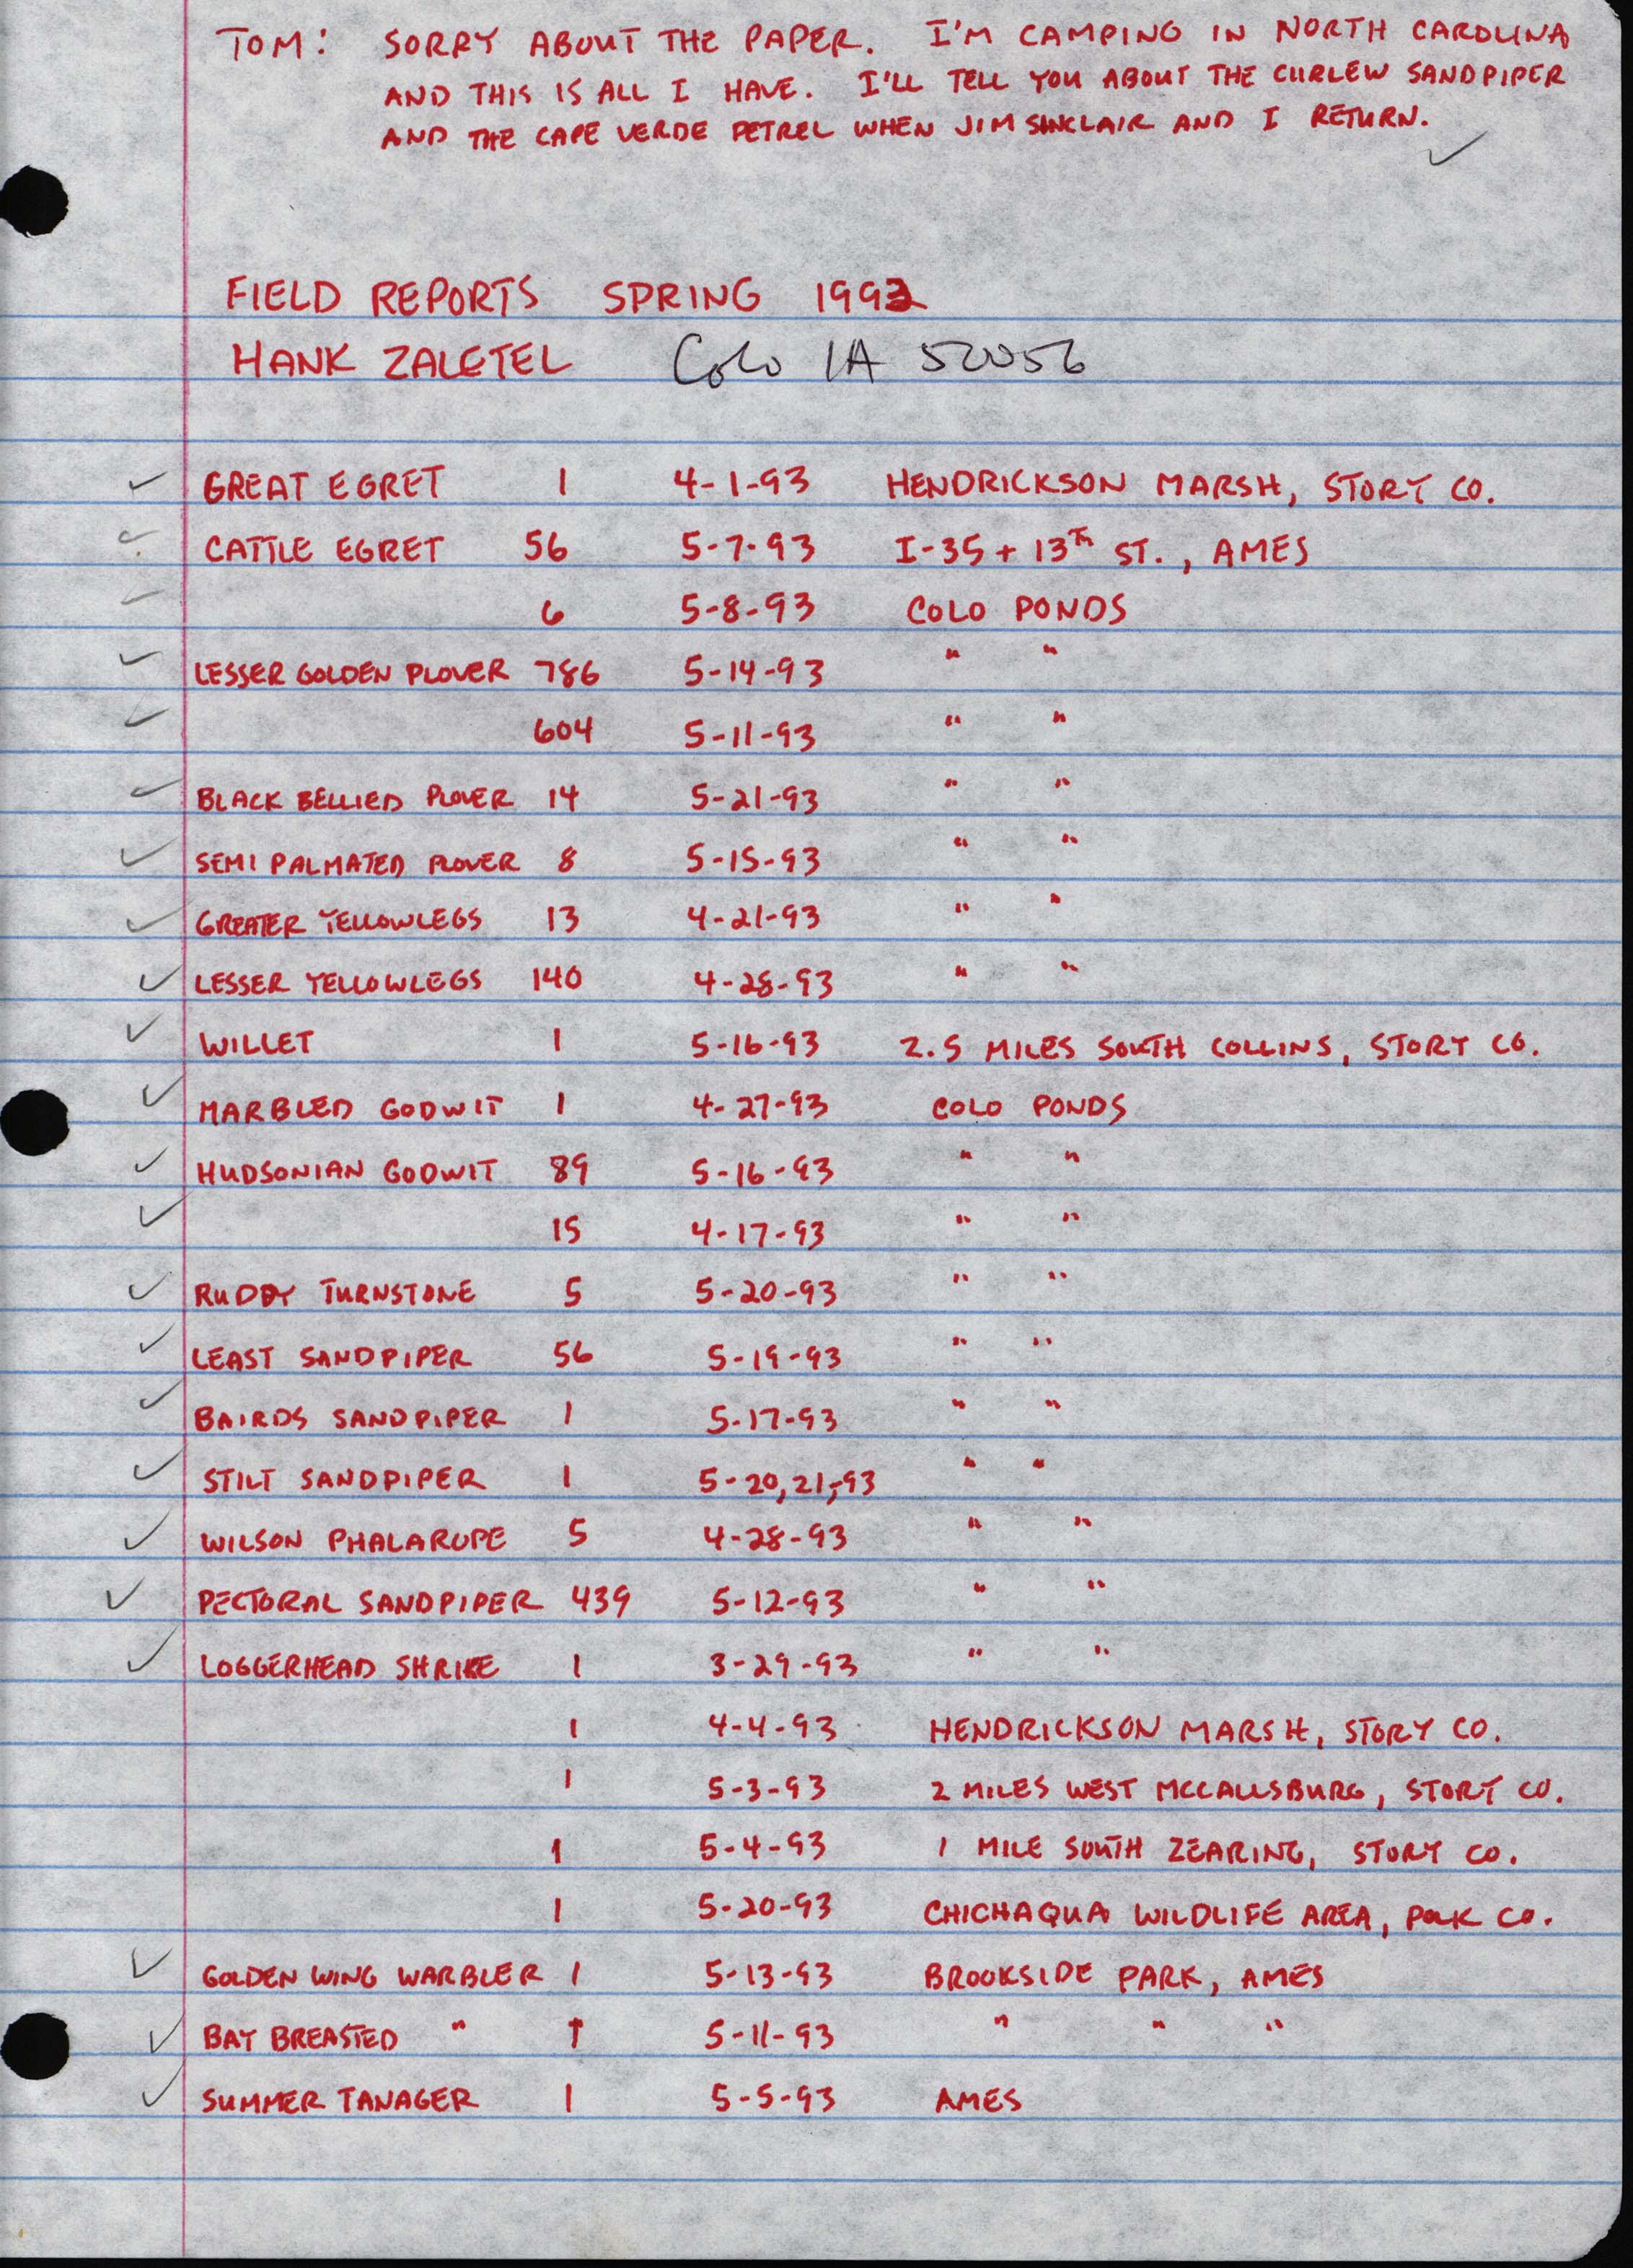 Field reports, Spring 1993, Hank Zaletel